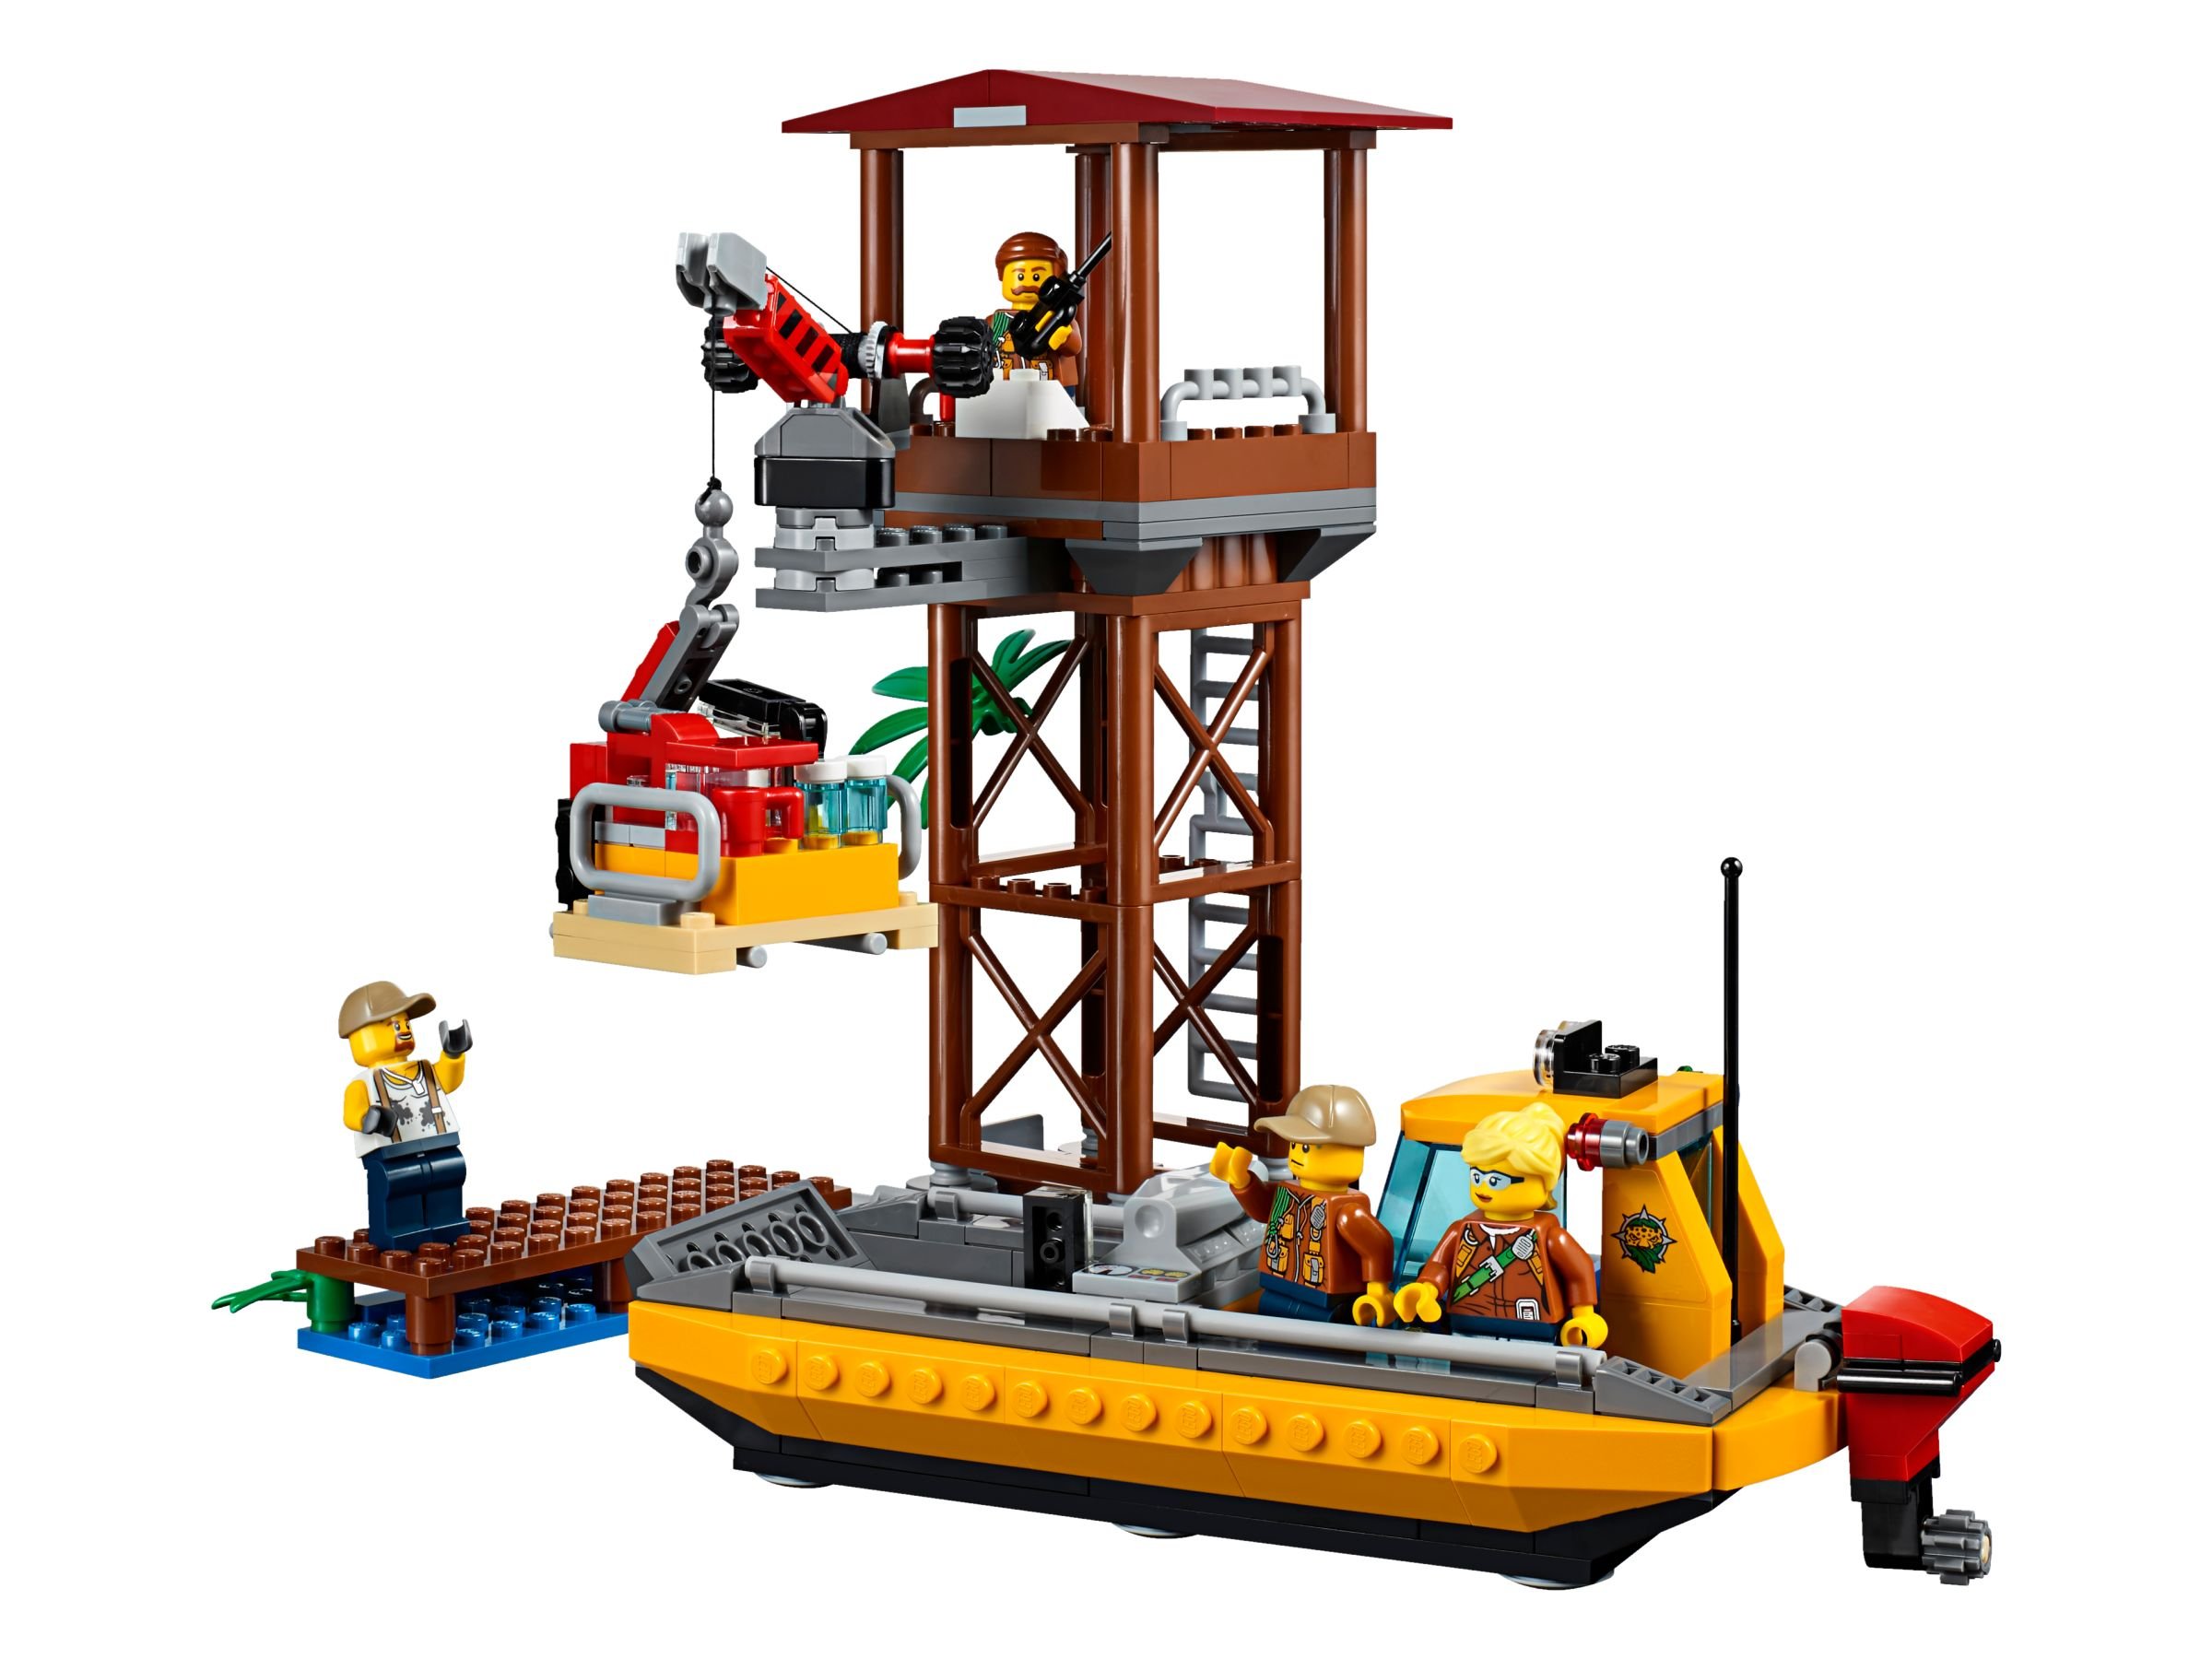 LEGO City 60162 Dschungel-Versorgungshubschrauber LEGO_60162_alt5.jpg